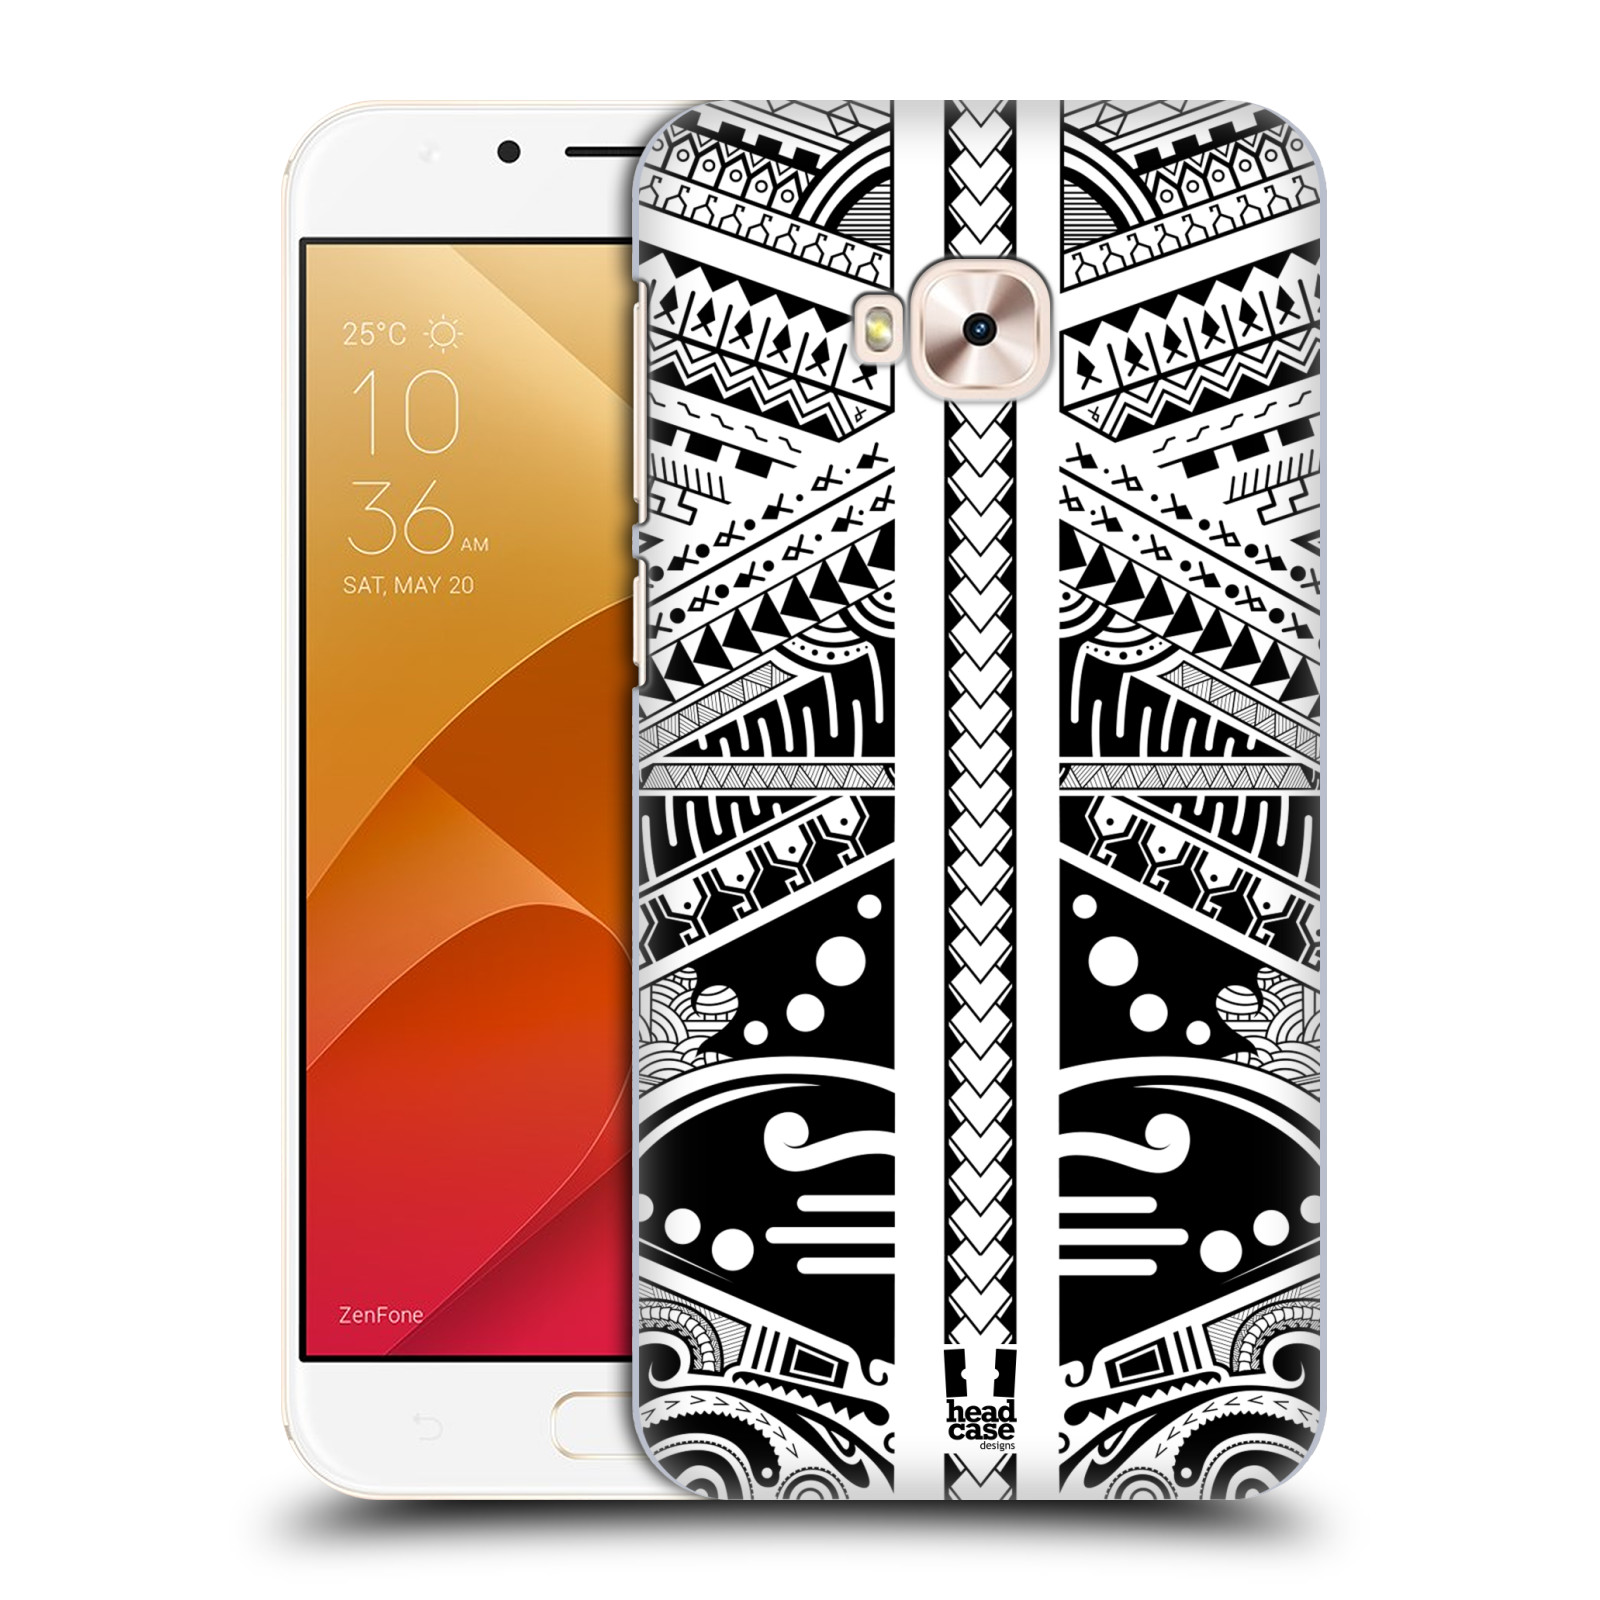 HEAD CASE plastový obal na mobil Asus Zenfone 4 Selfie Pro ZD552KL vzor Maorské tetování motivy černá a bílá POLYNÉZIE